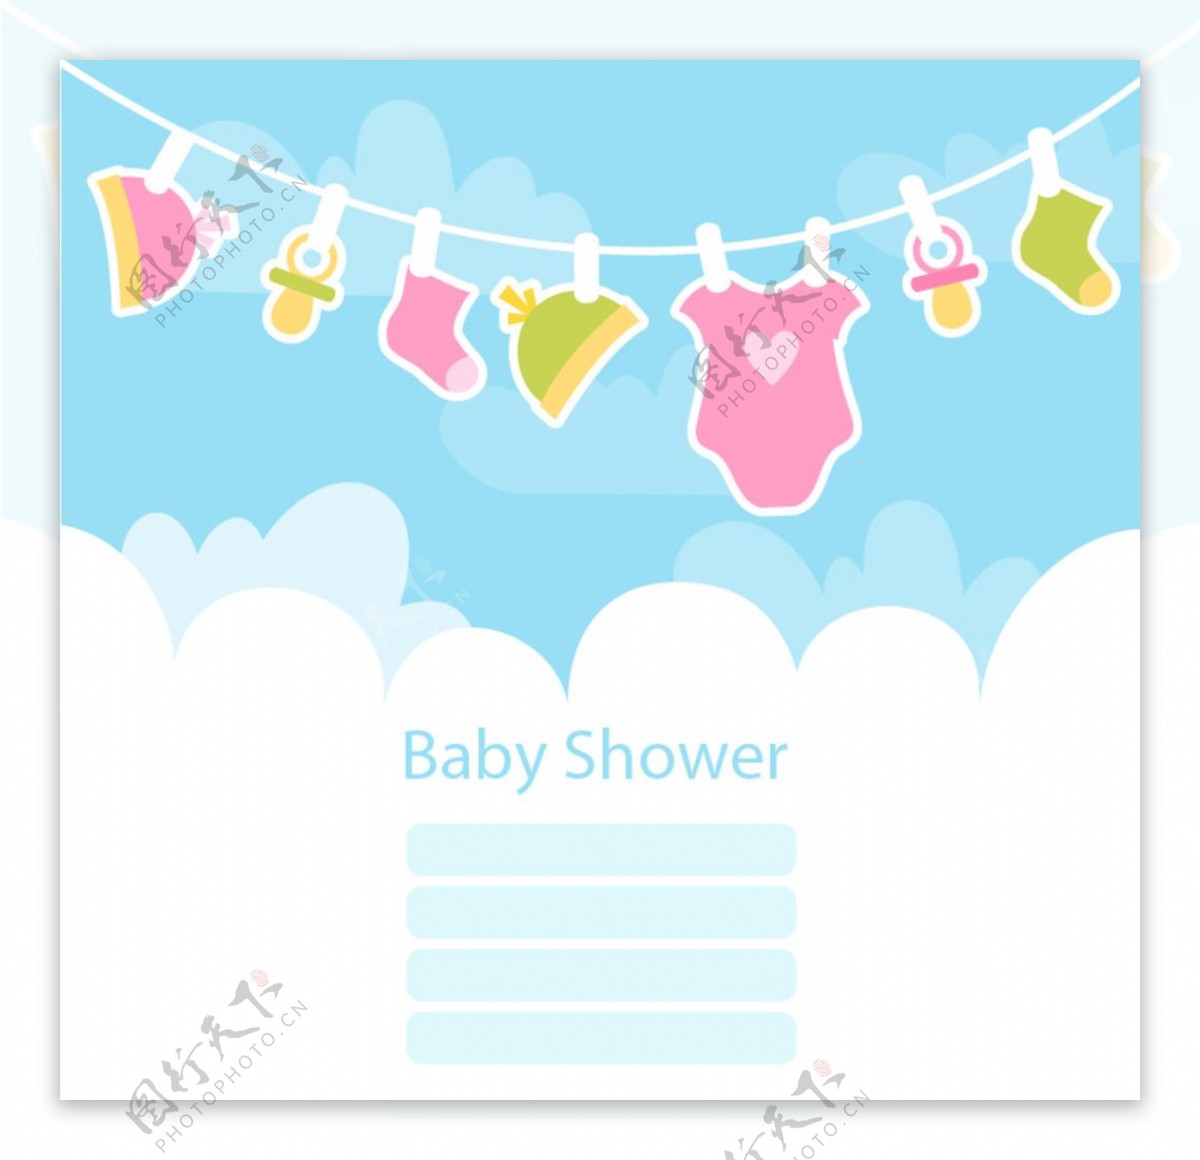 婴儿洗澡卡和婴儿衣服